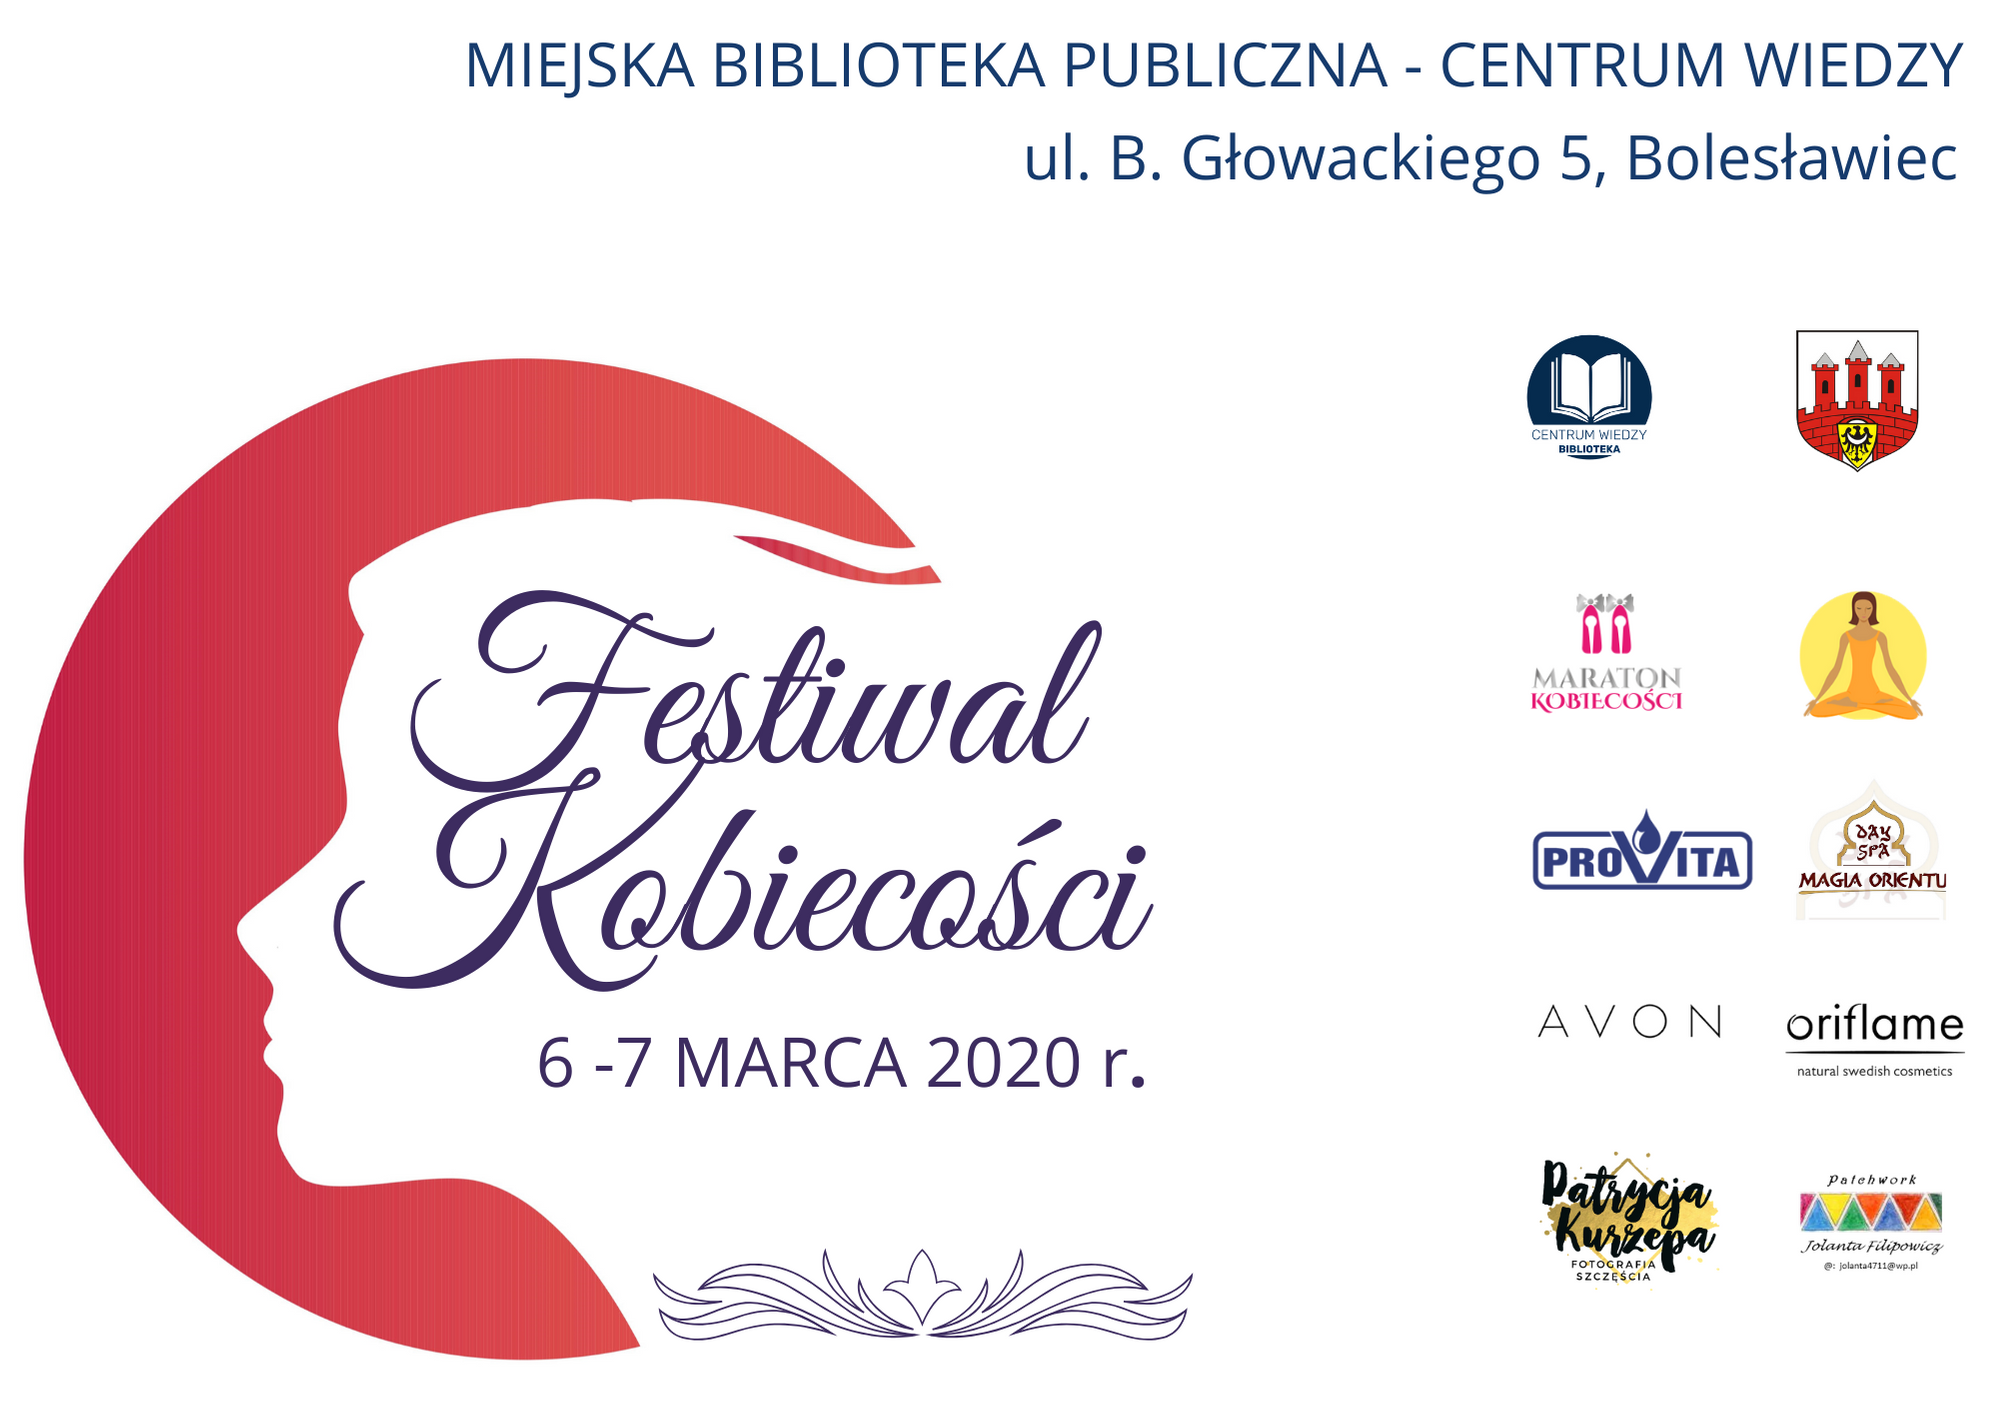 Festiwal Kobiecości 6-7 marca 2020 r.